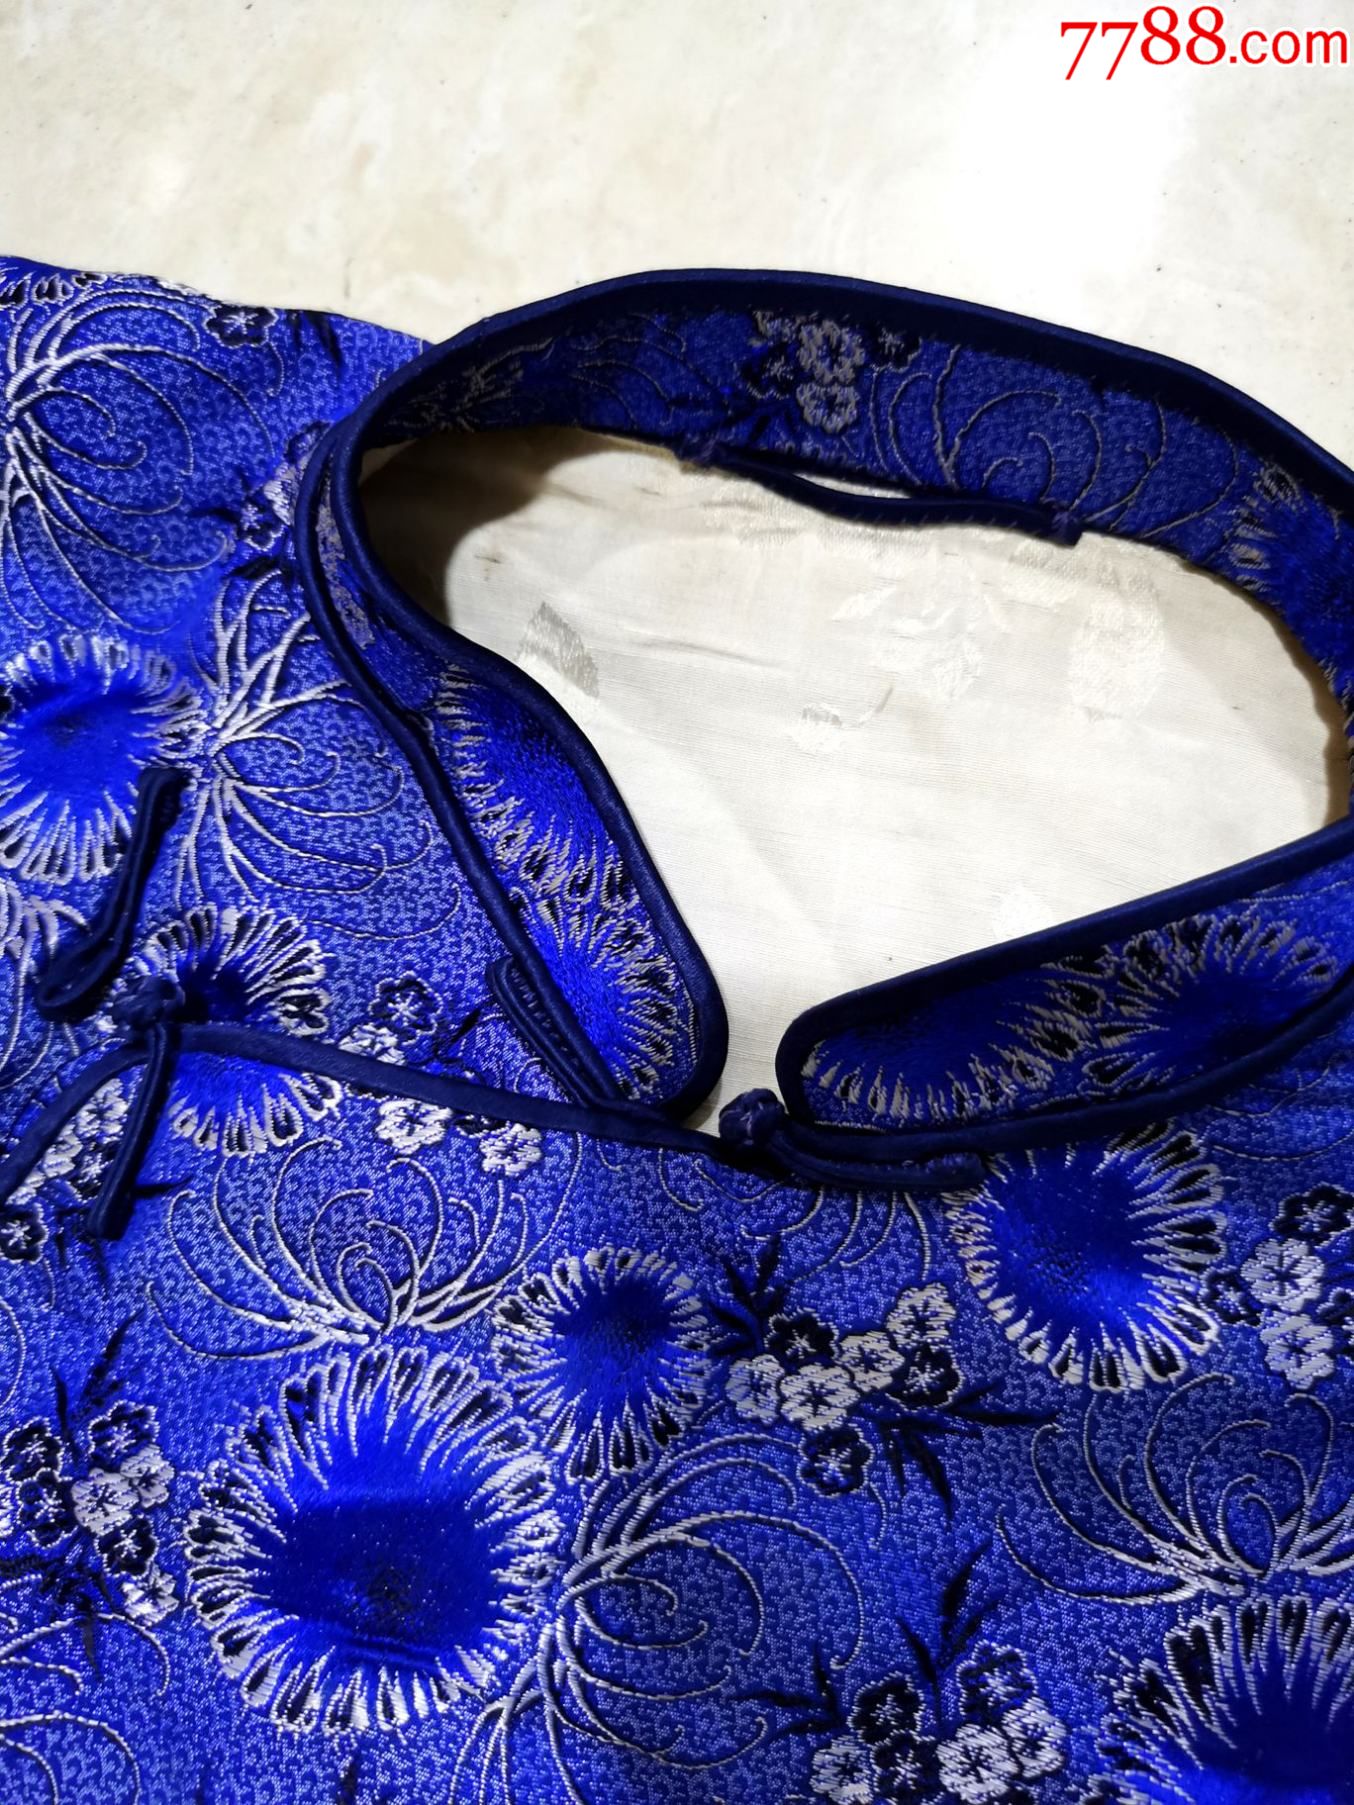 民国旗袍式棉袄,丝绸面,花色漂亮